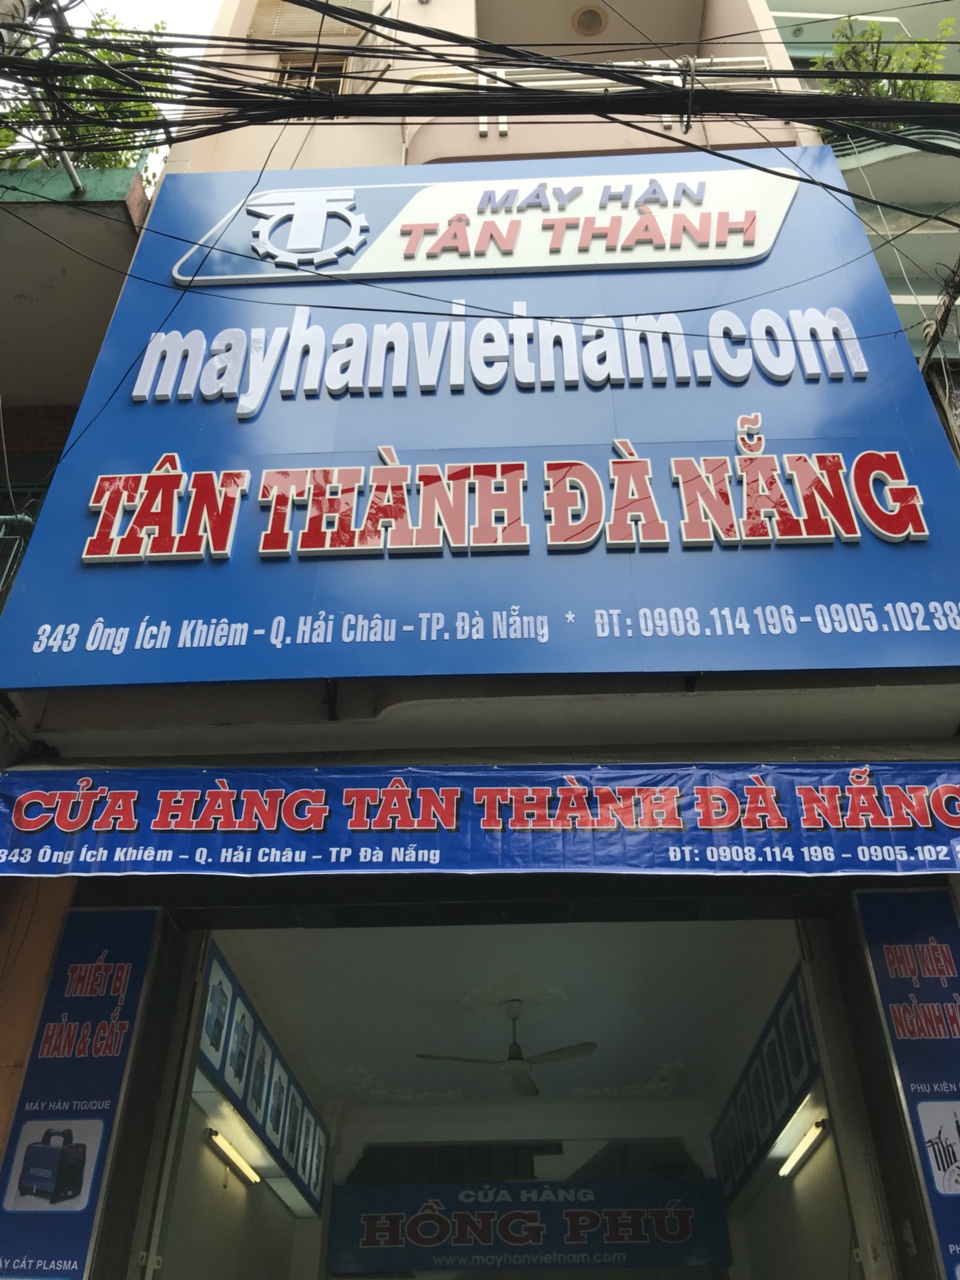 TAN_THANH_DA_NANG